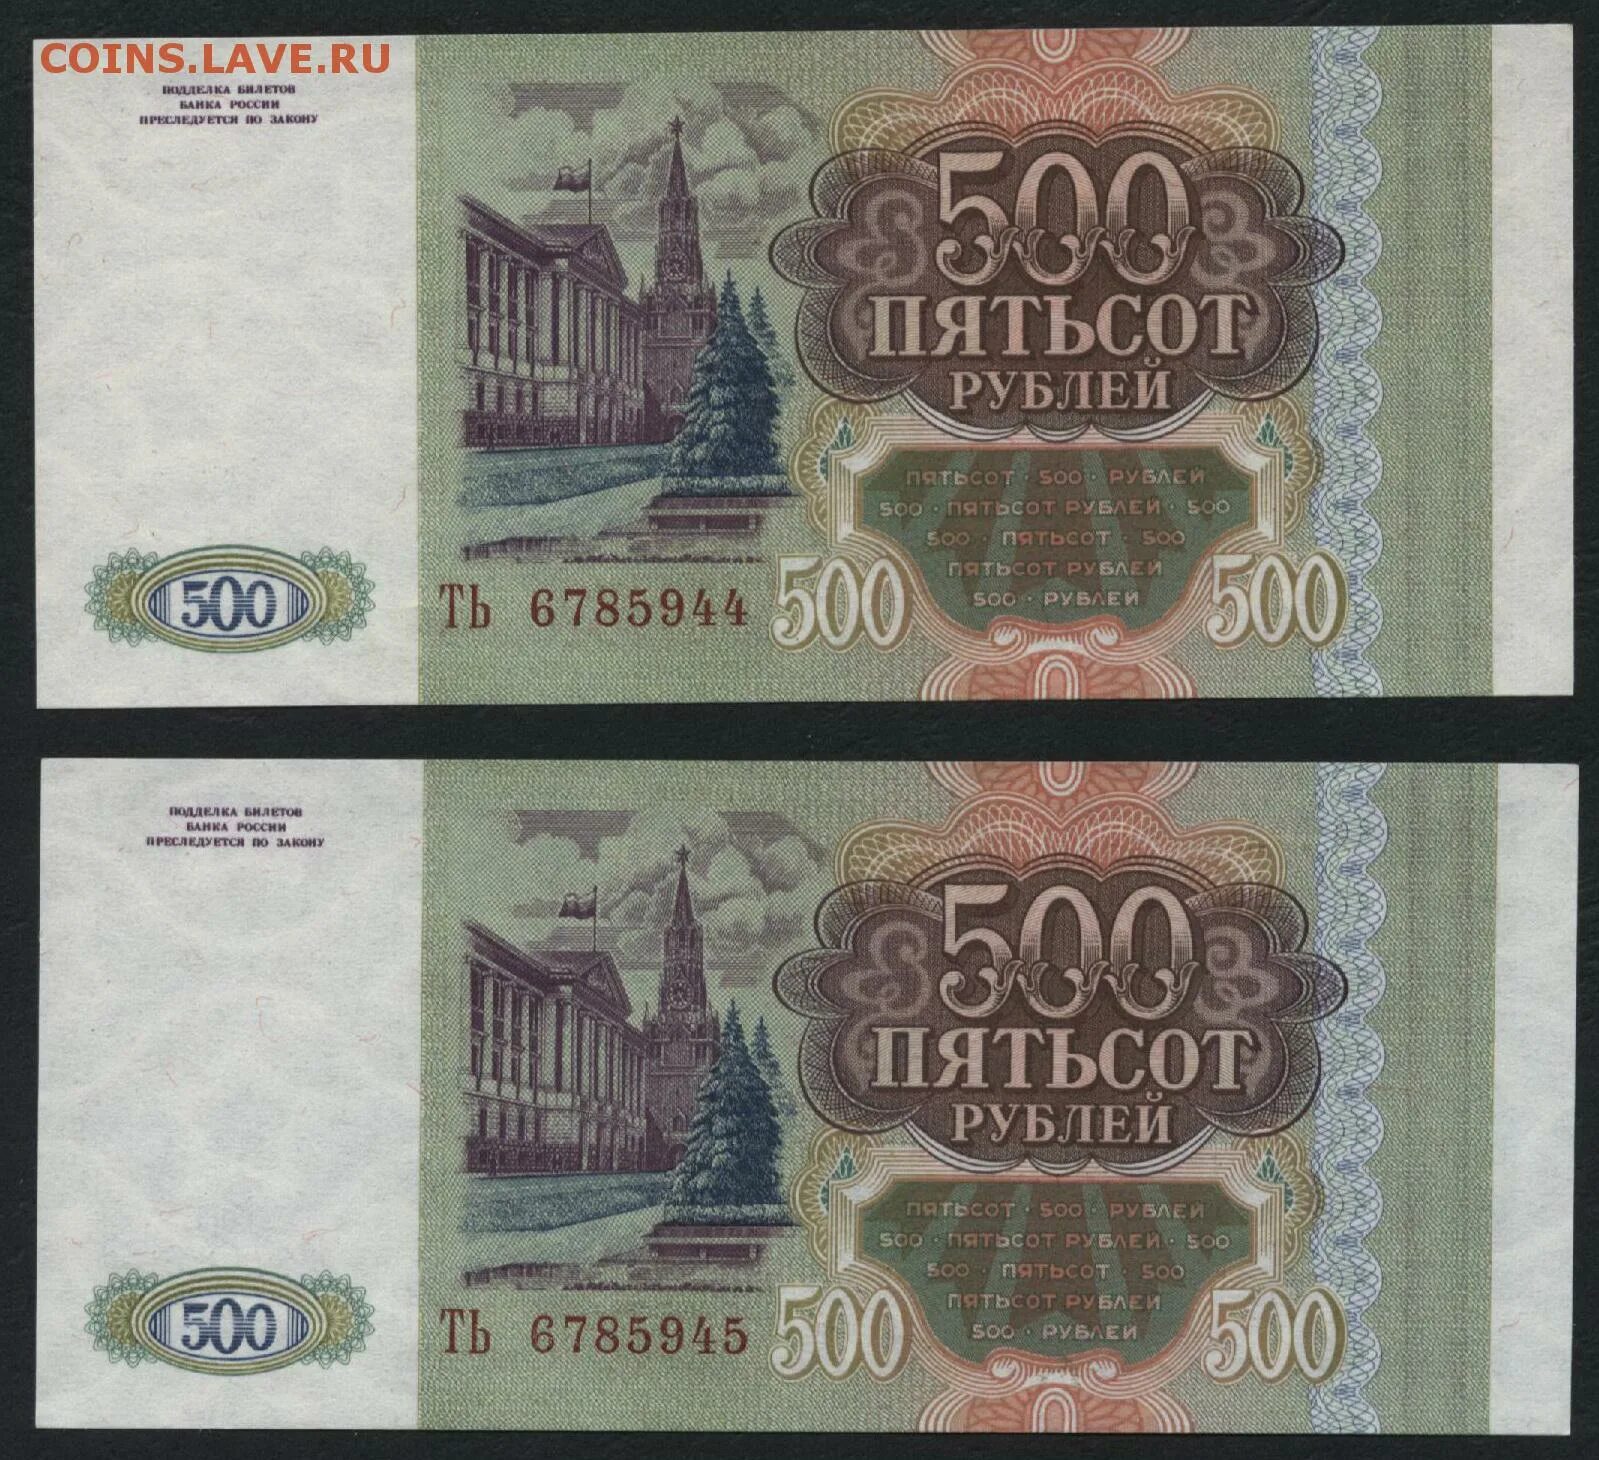 11 500 в рублях. 500 Рублей. 500 Рублей 1993. Пятьсот рублей 1993. 500 Рублей 1993 года.